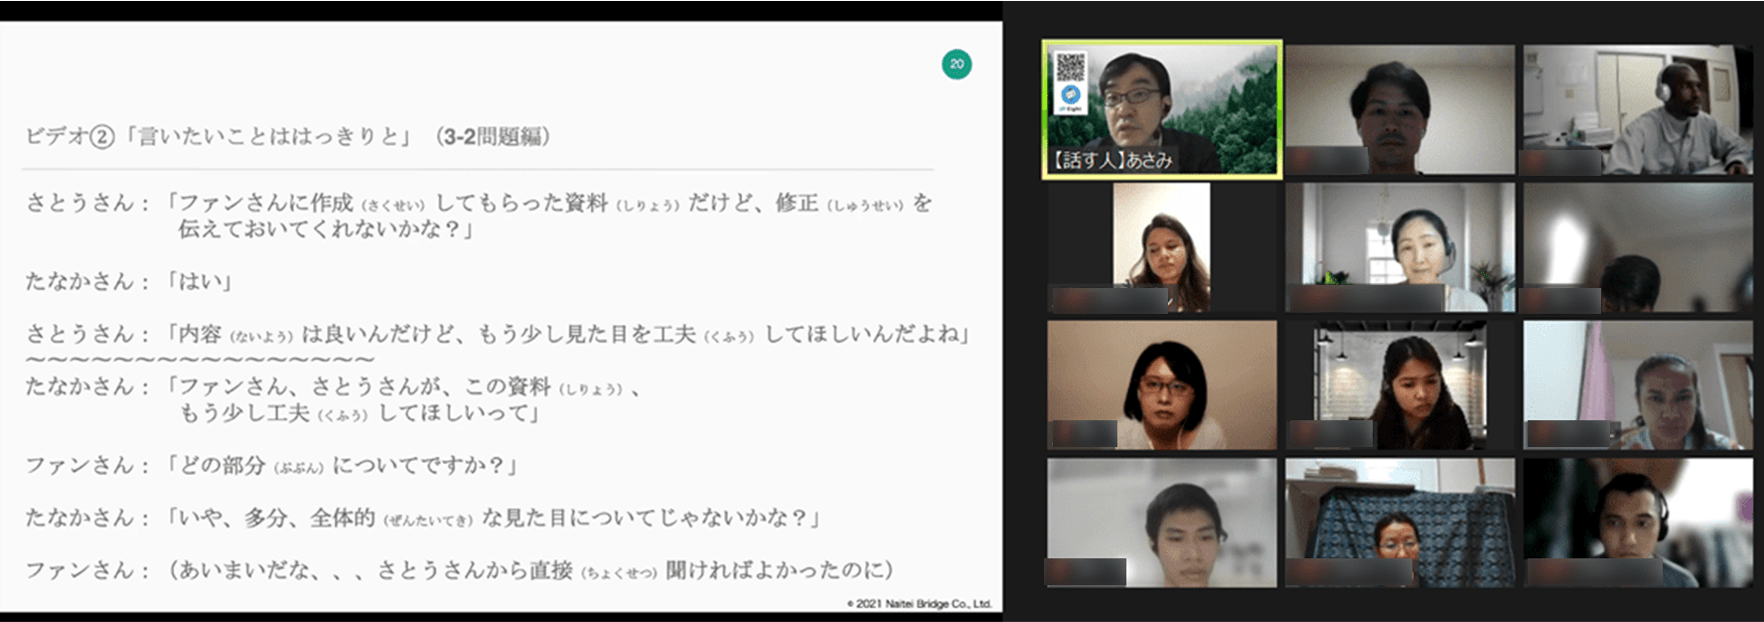 福井県企業の外国人スタッフに対するオンライン日本語教育